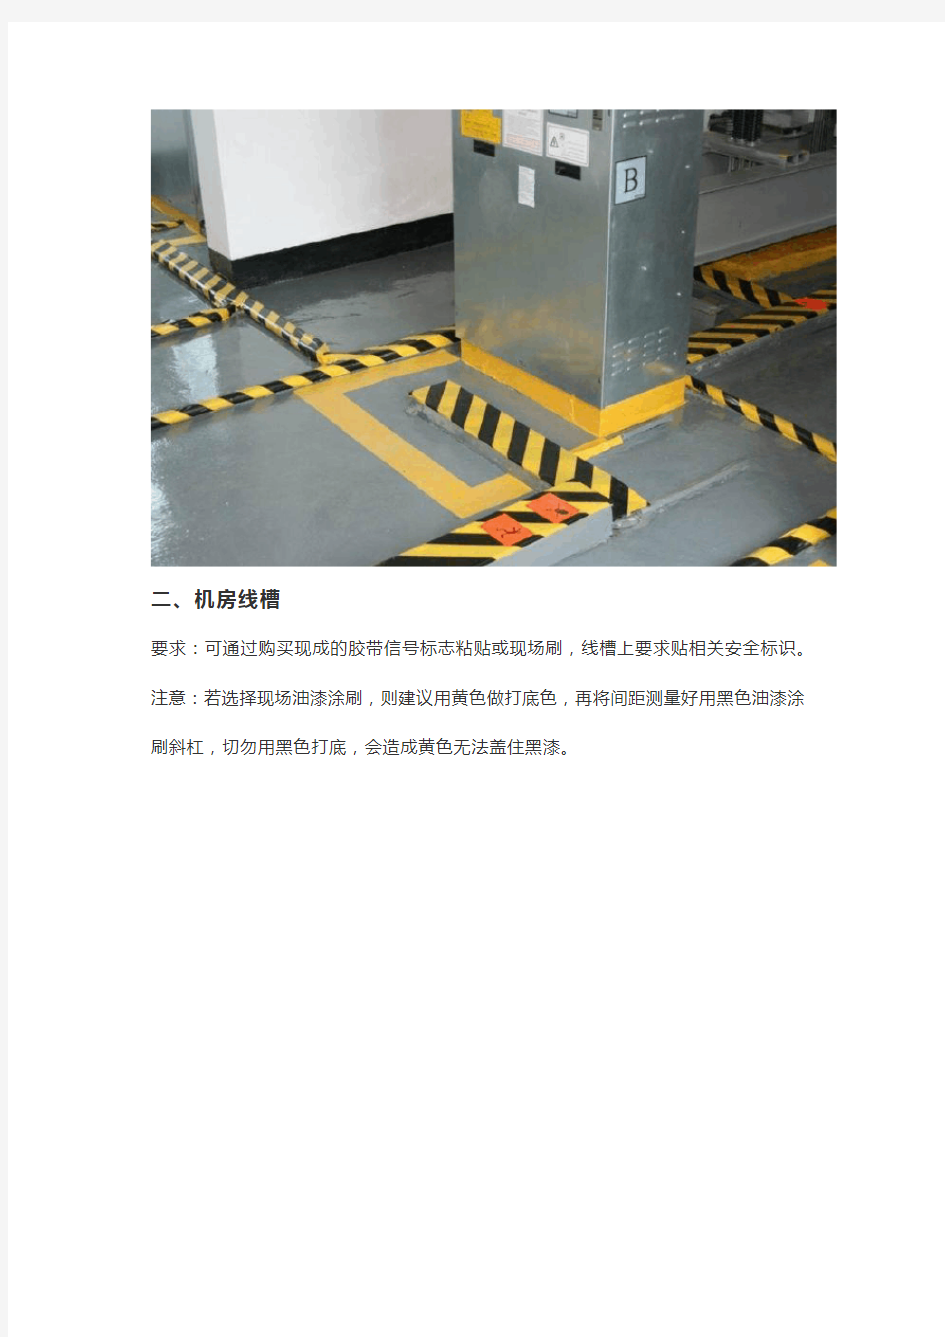 物业电梯机房标准管理